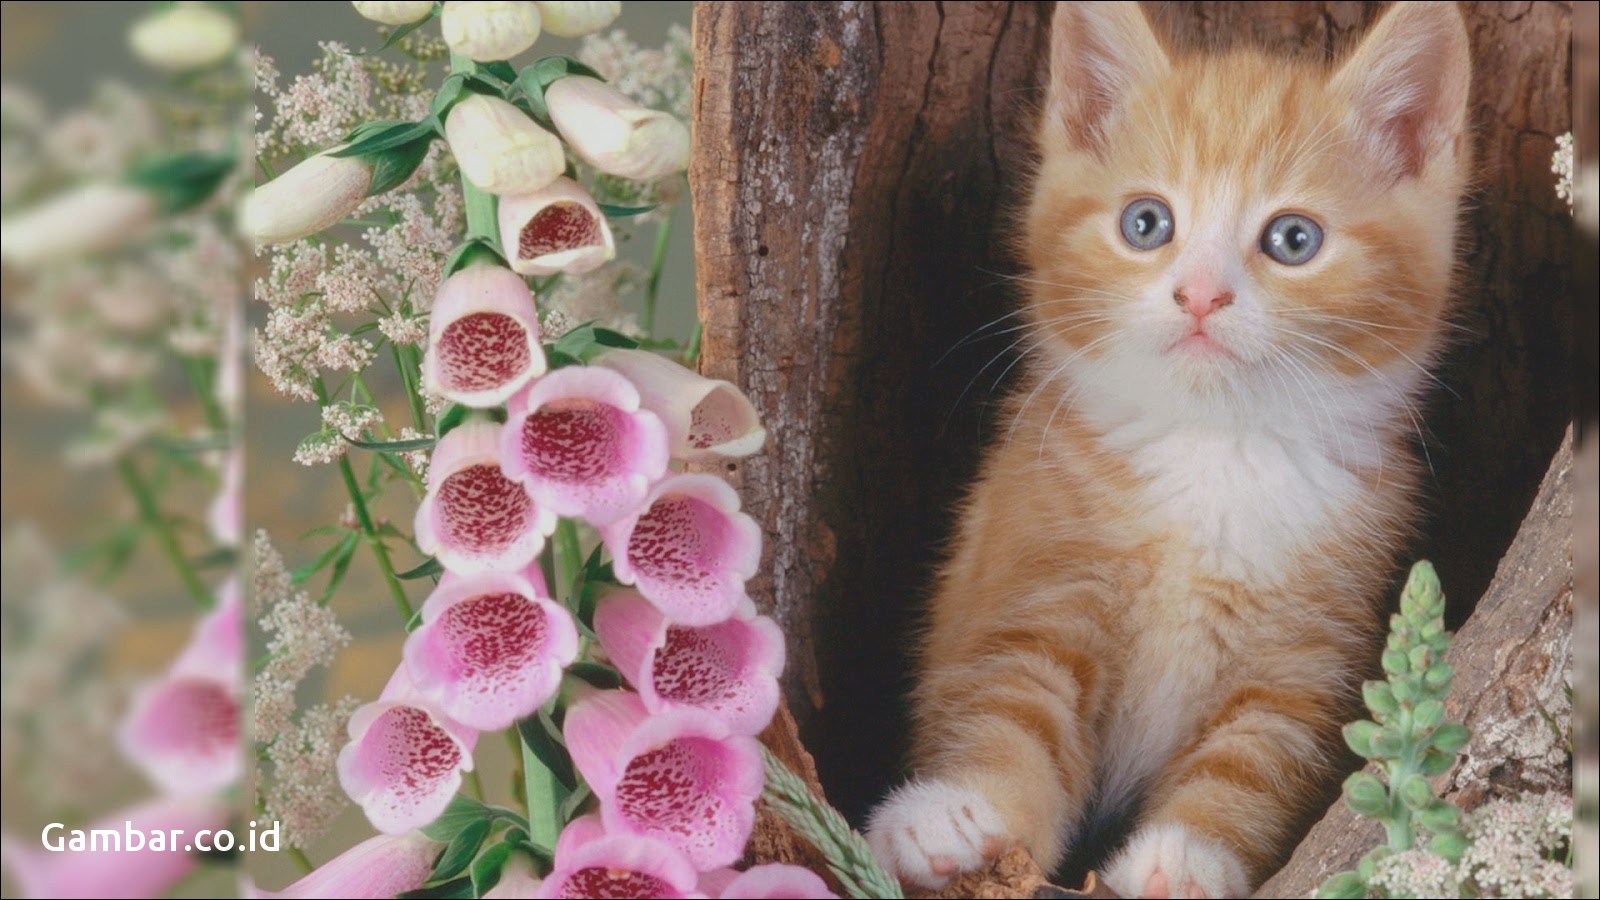  Wallpaper  Kucing  Lucu Hd  Beautiful Cute Cats 1600x900 